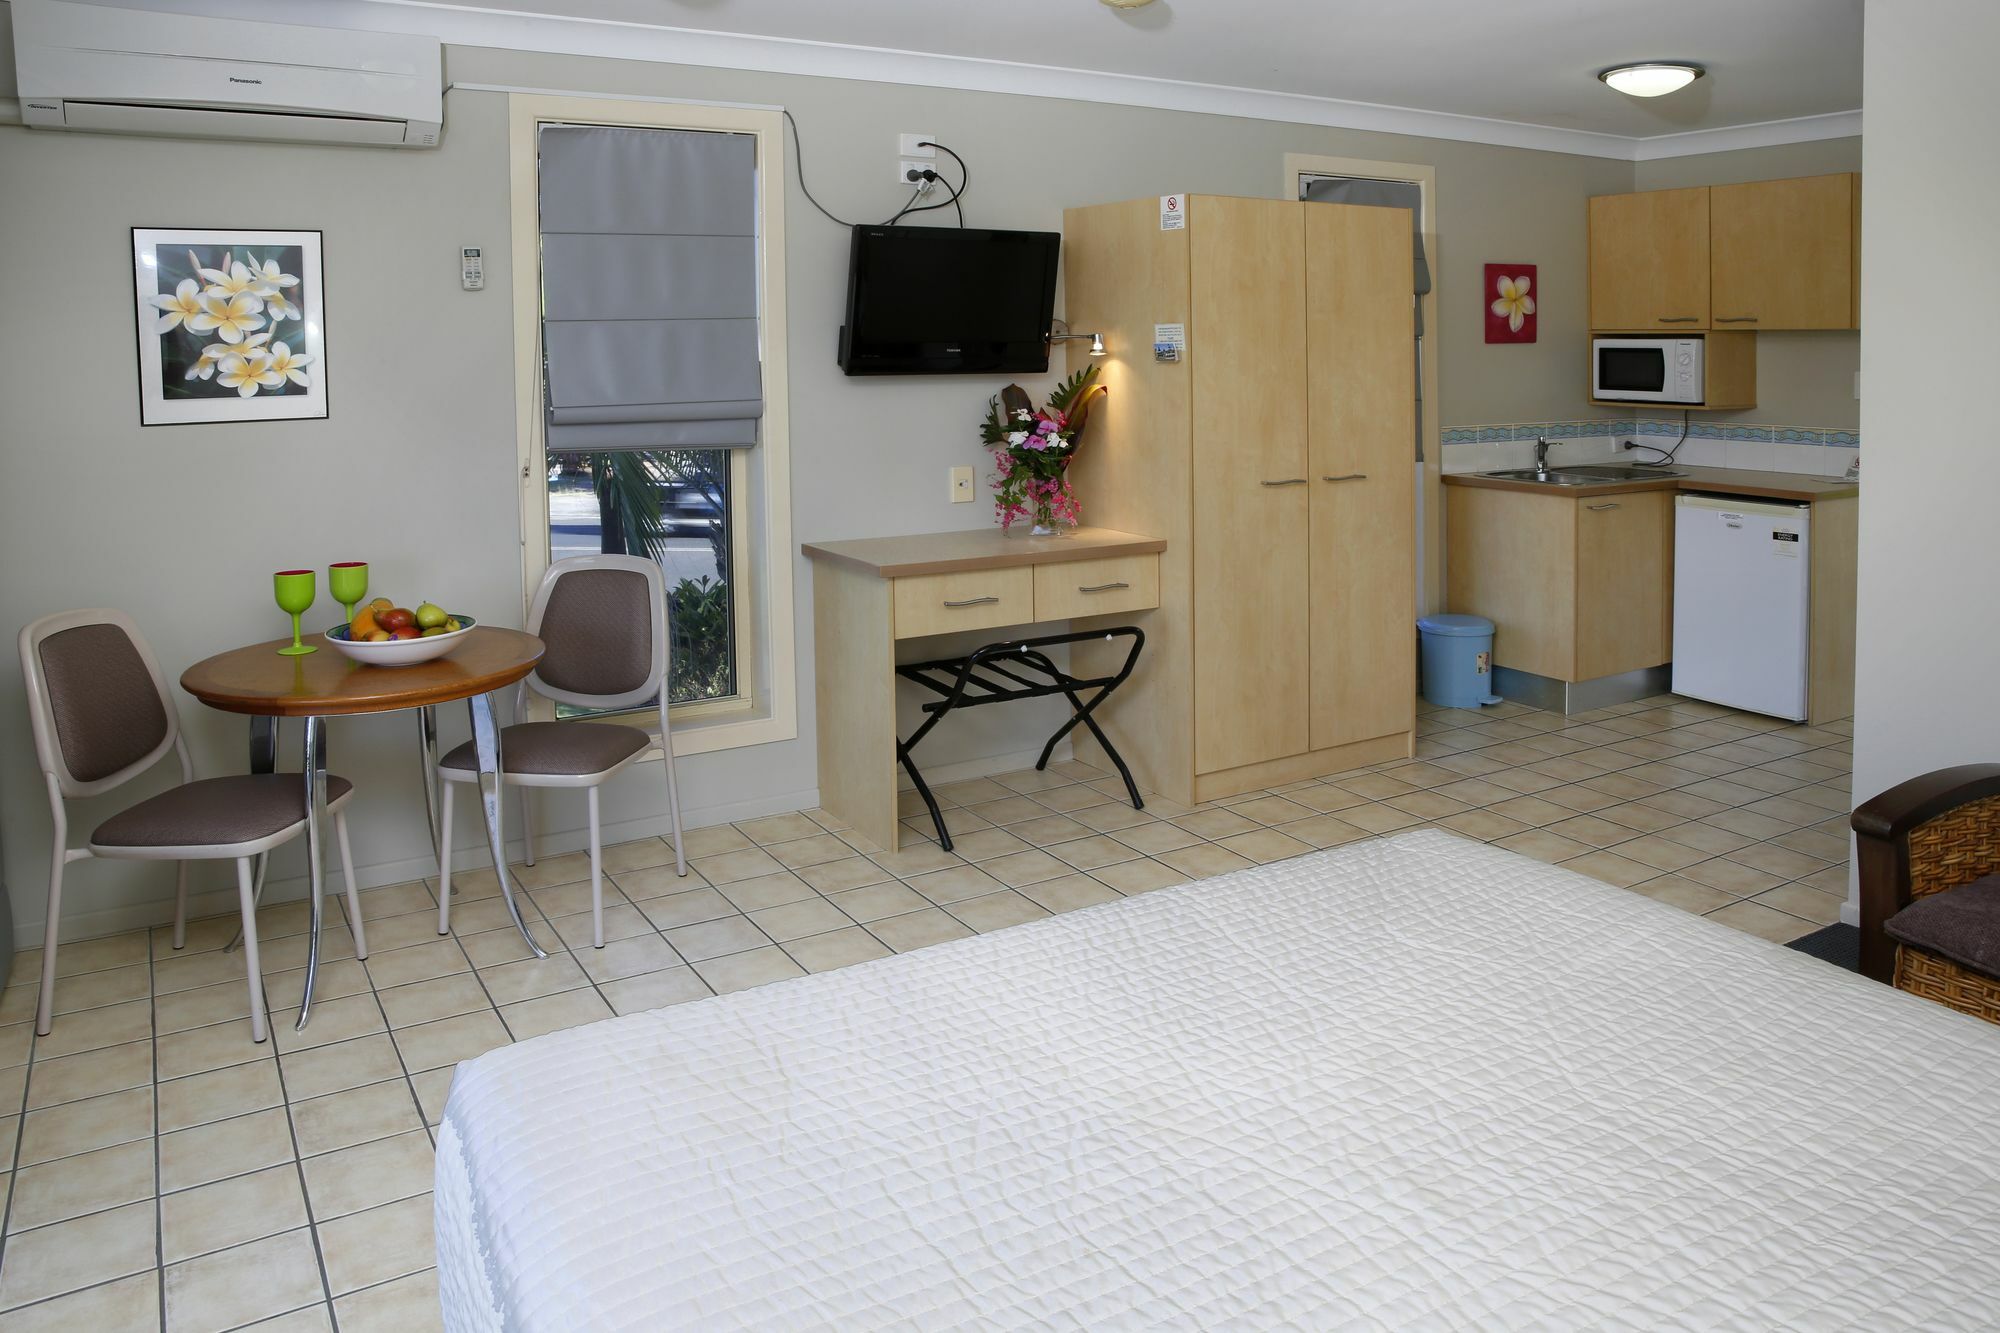 Yamba Sun Motel Zewnętrze zdjęcie